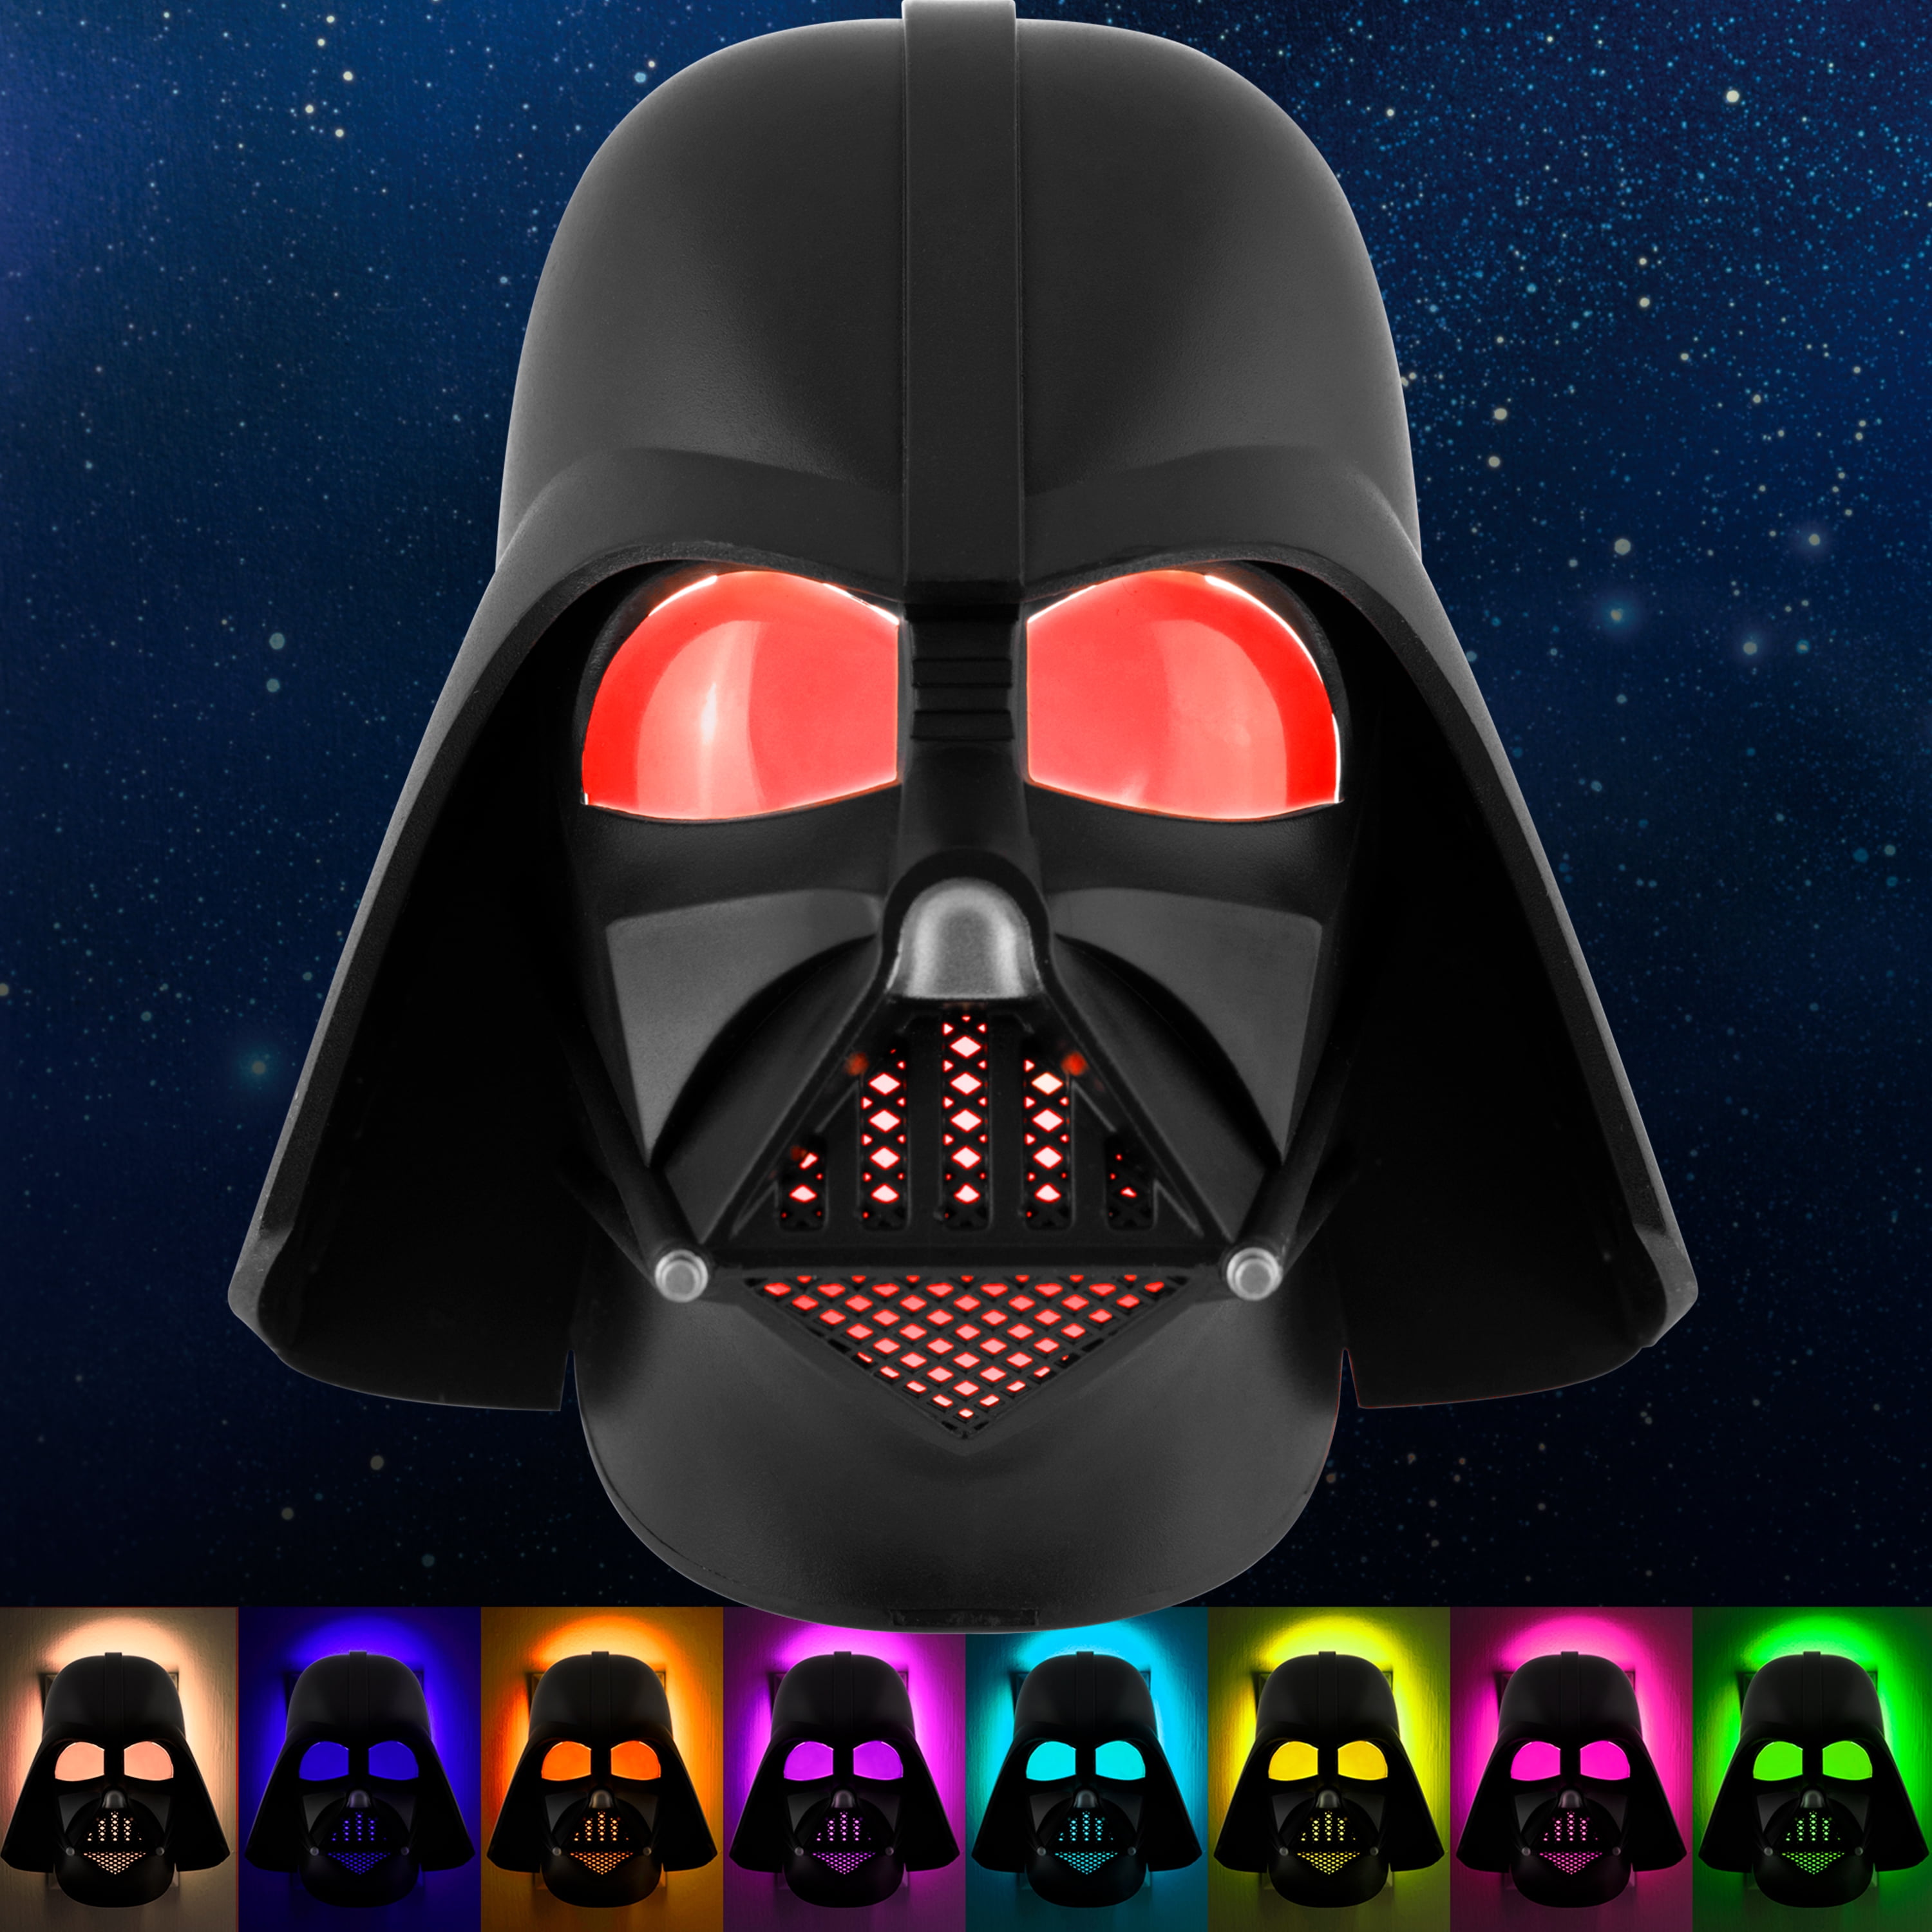 Star Wars Darth Vader LED night Table illusion lamp 